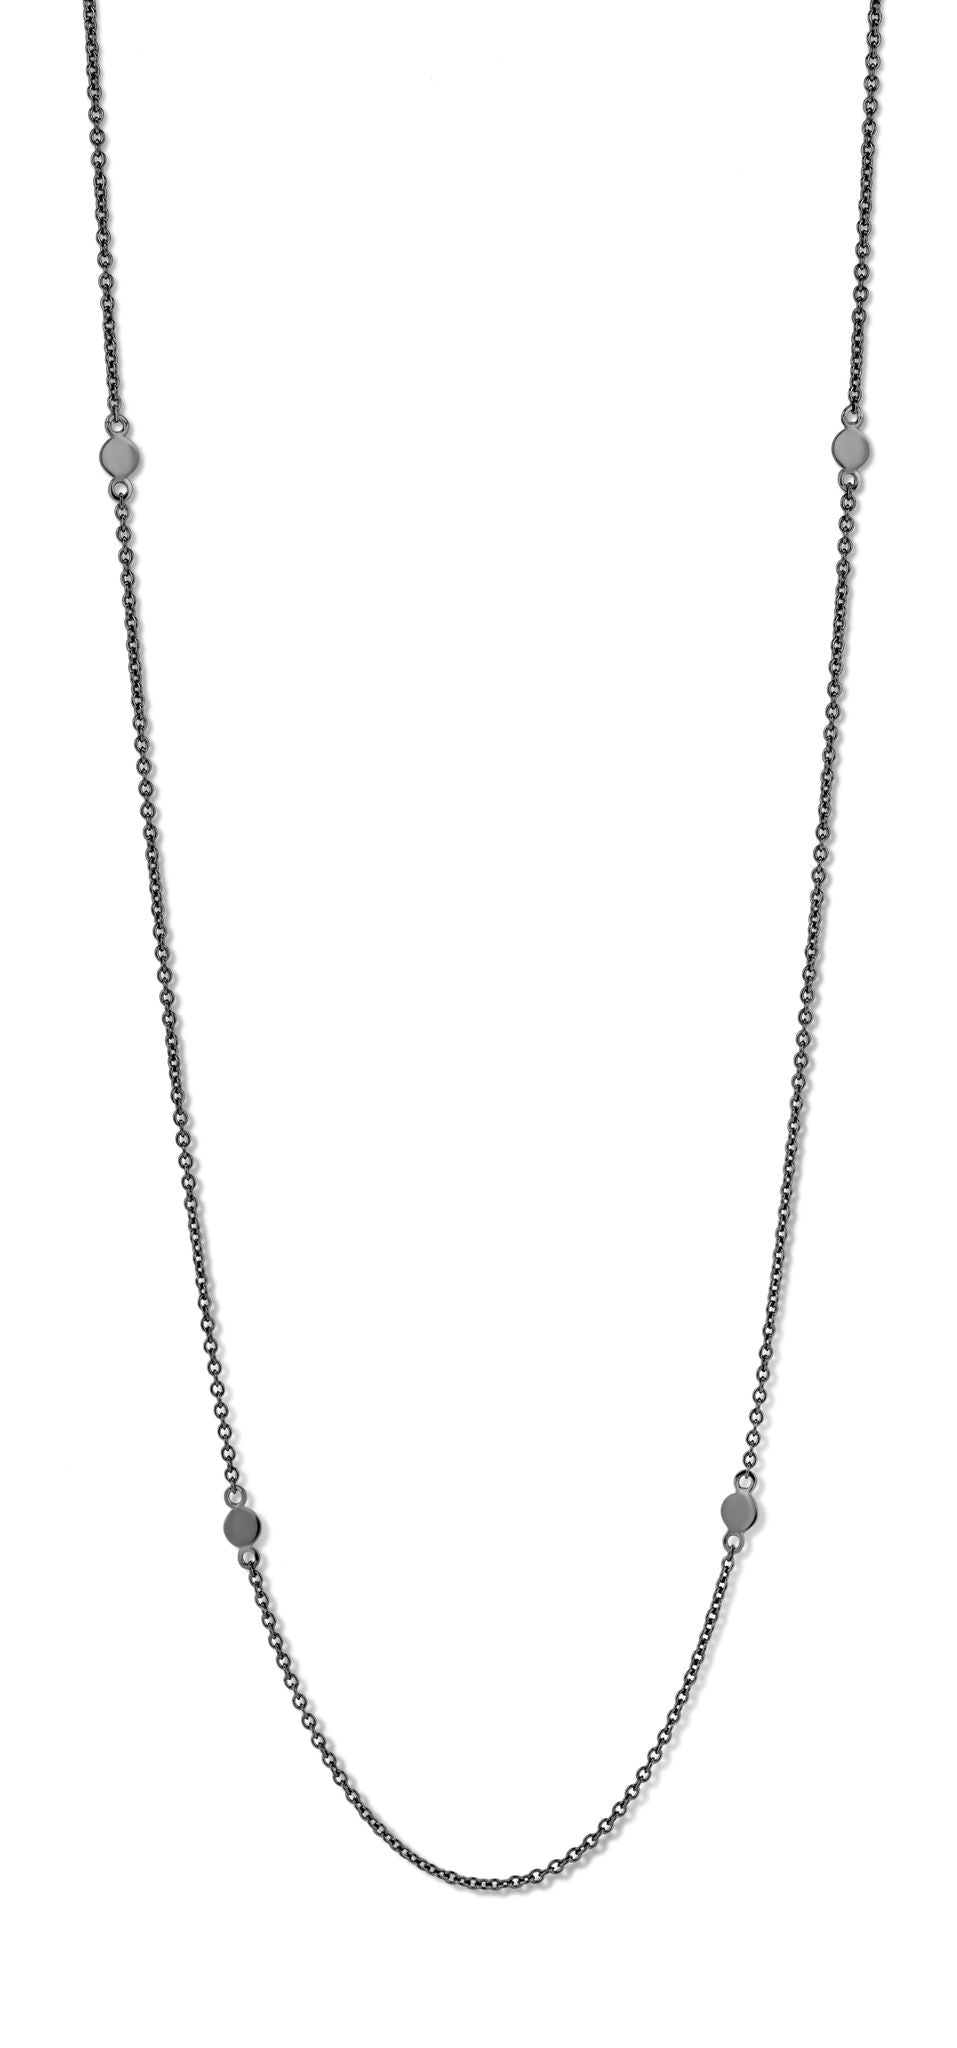 Obsession halskæde 60/70 cm - sølv sort ruthineret-2